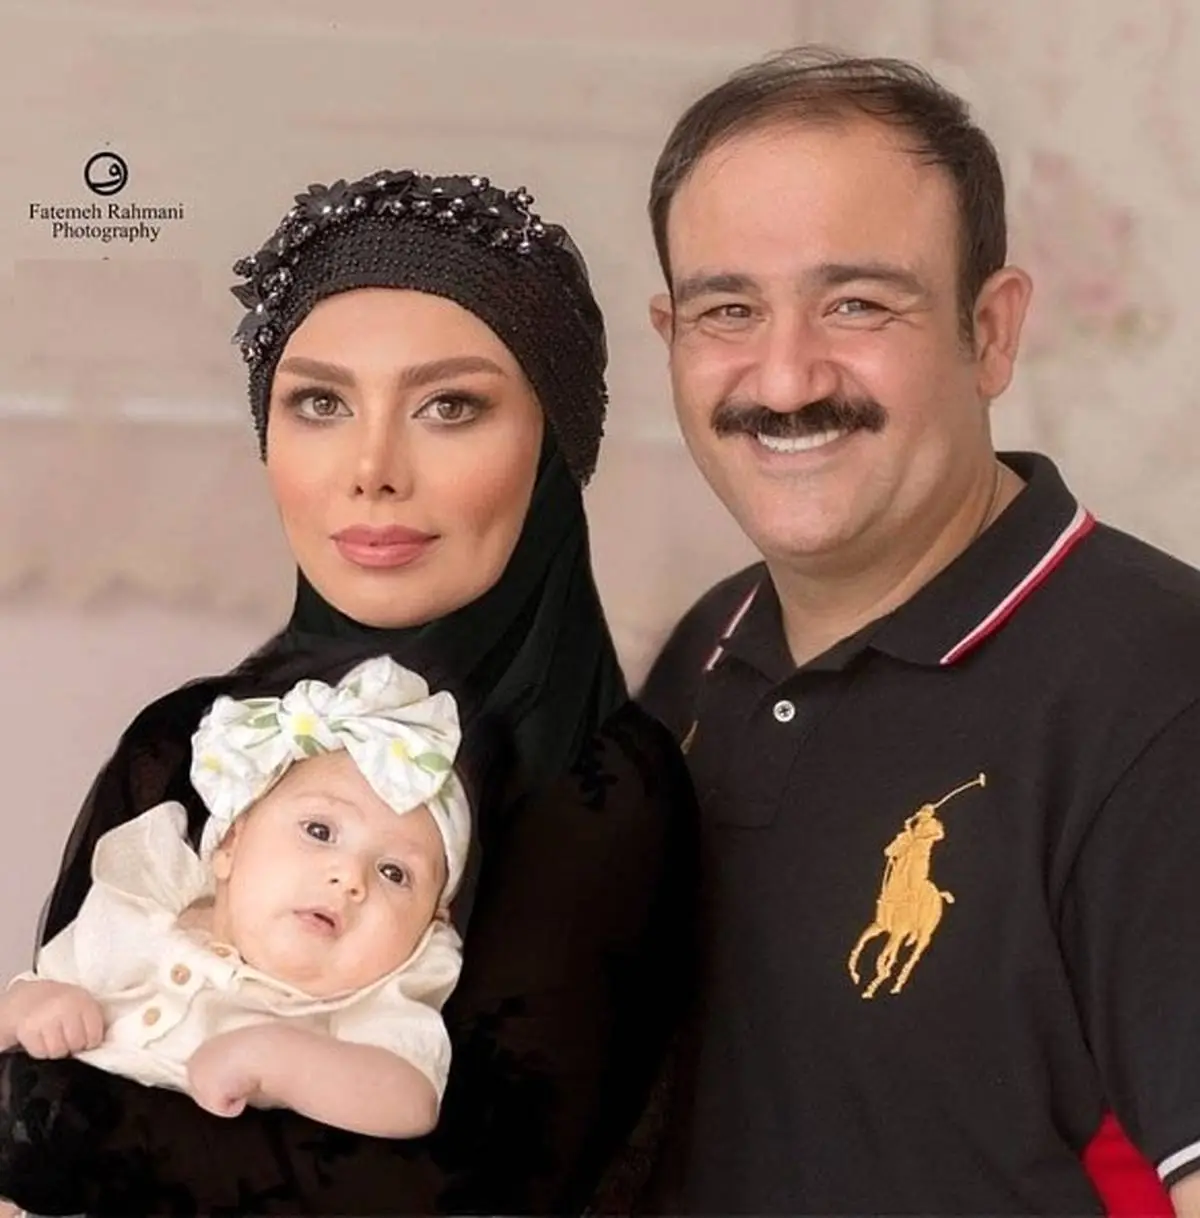 مهران غفوریان| عکسهای دیده نشده با همسرش در تولد لاکچری هانا غفوریان + عکس 